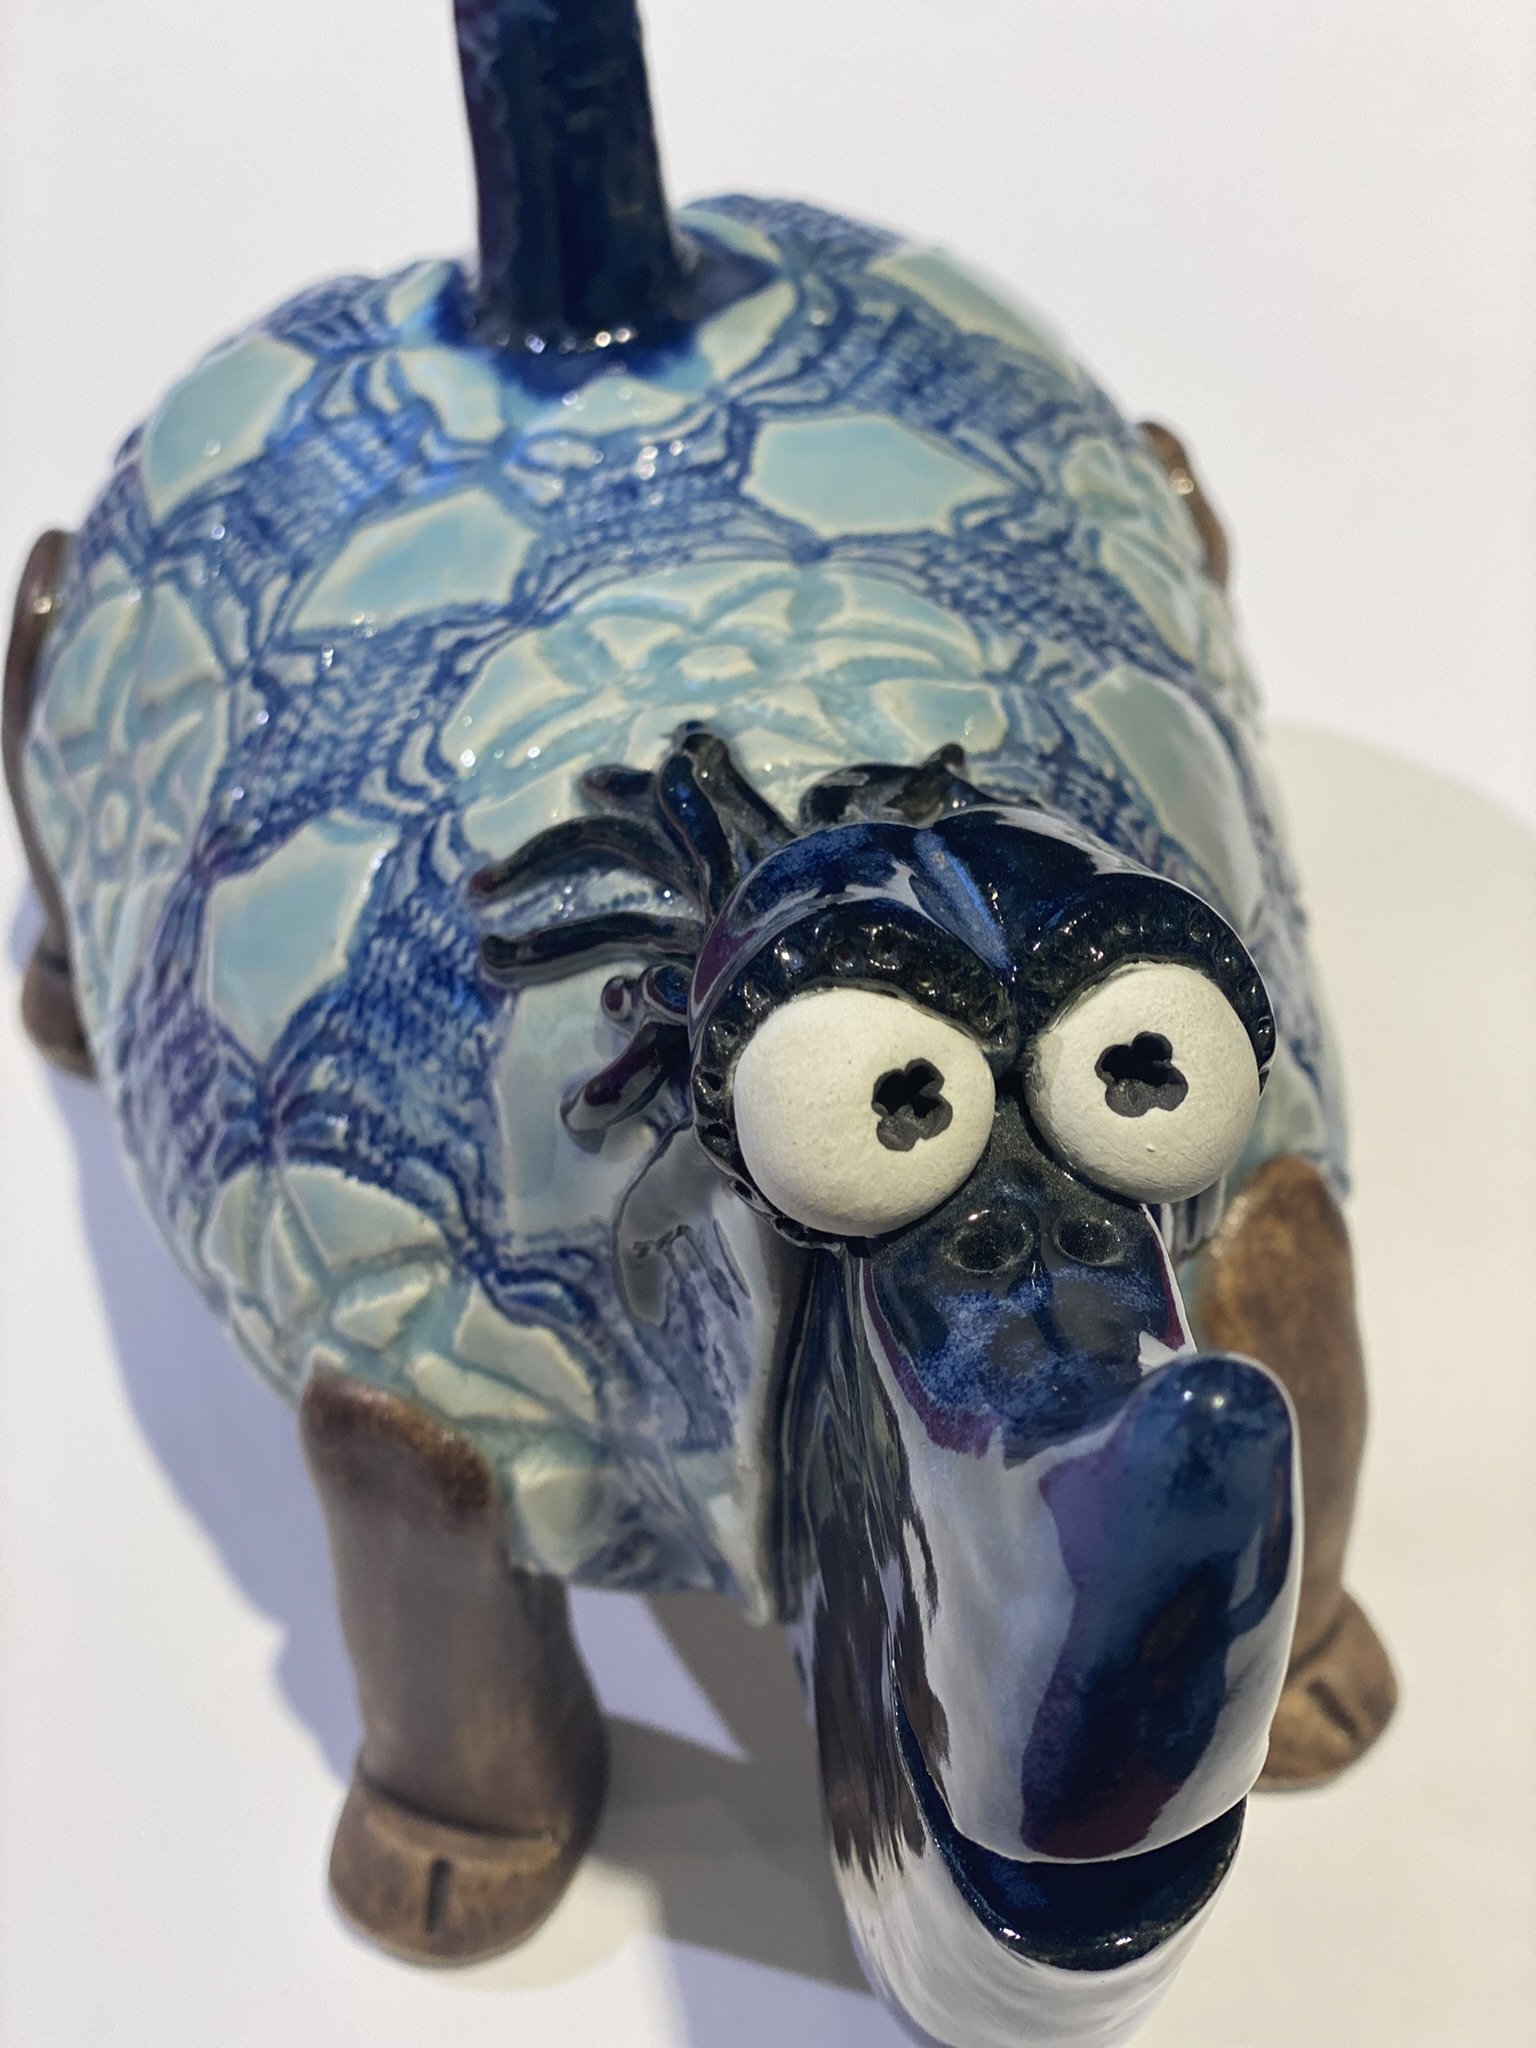 Stort Fabeldyr i keramik af Vibeke Hrlyck